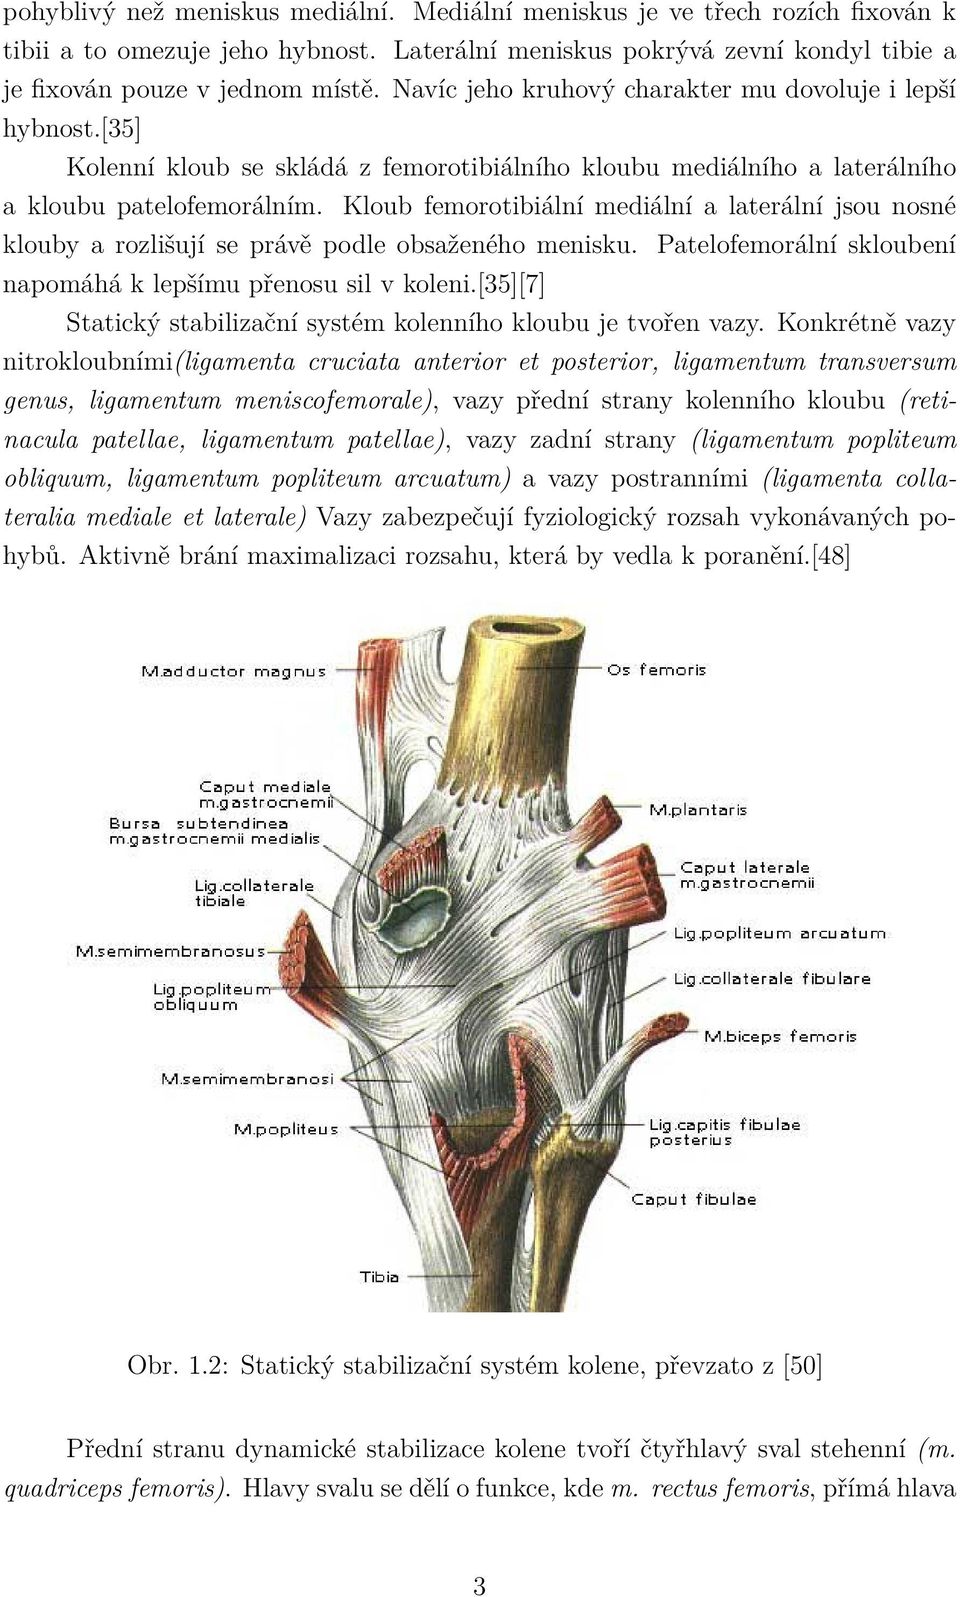 Kloub femorotibiální mediální a laterální jsou nosné klouby a rozlišují se právě podle obsaženého menisku. Patelofemorální skloubení napomáhá k lepšímu přenosu sil v koleni.